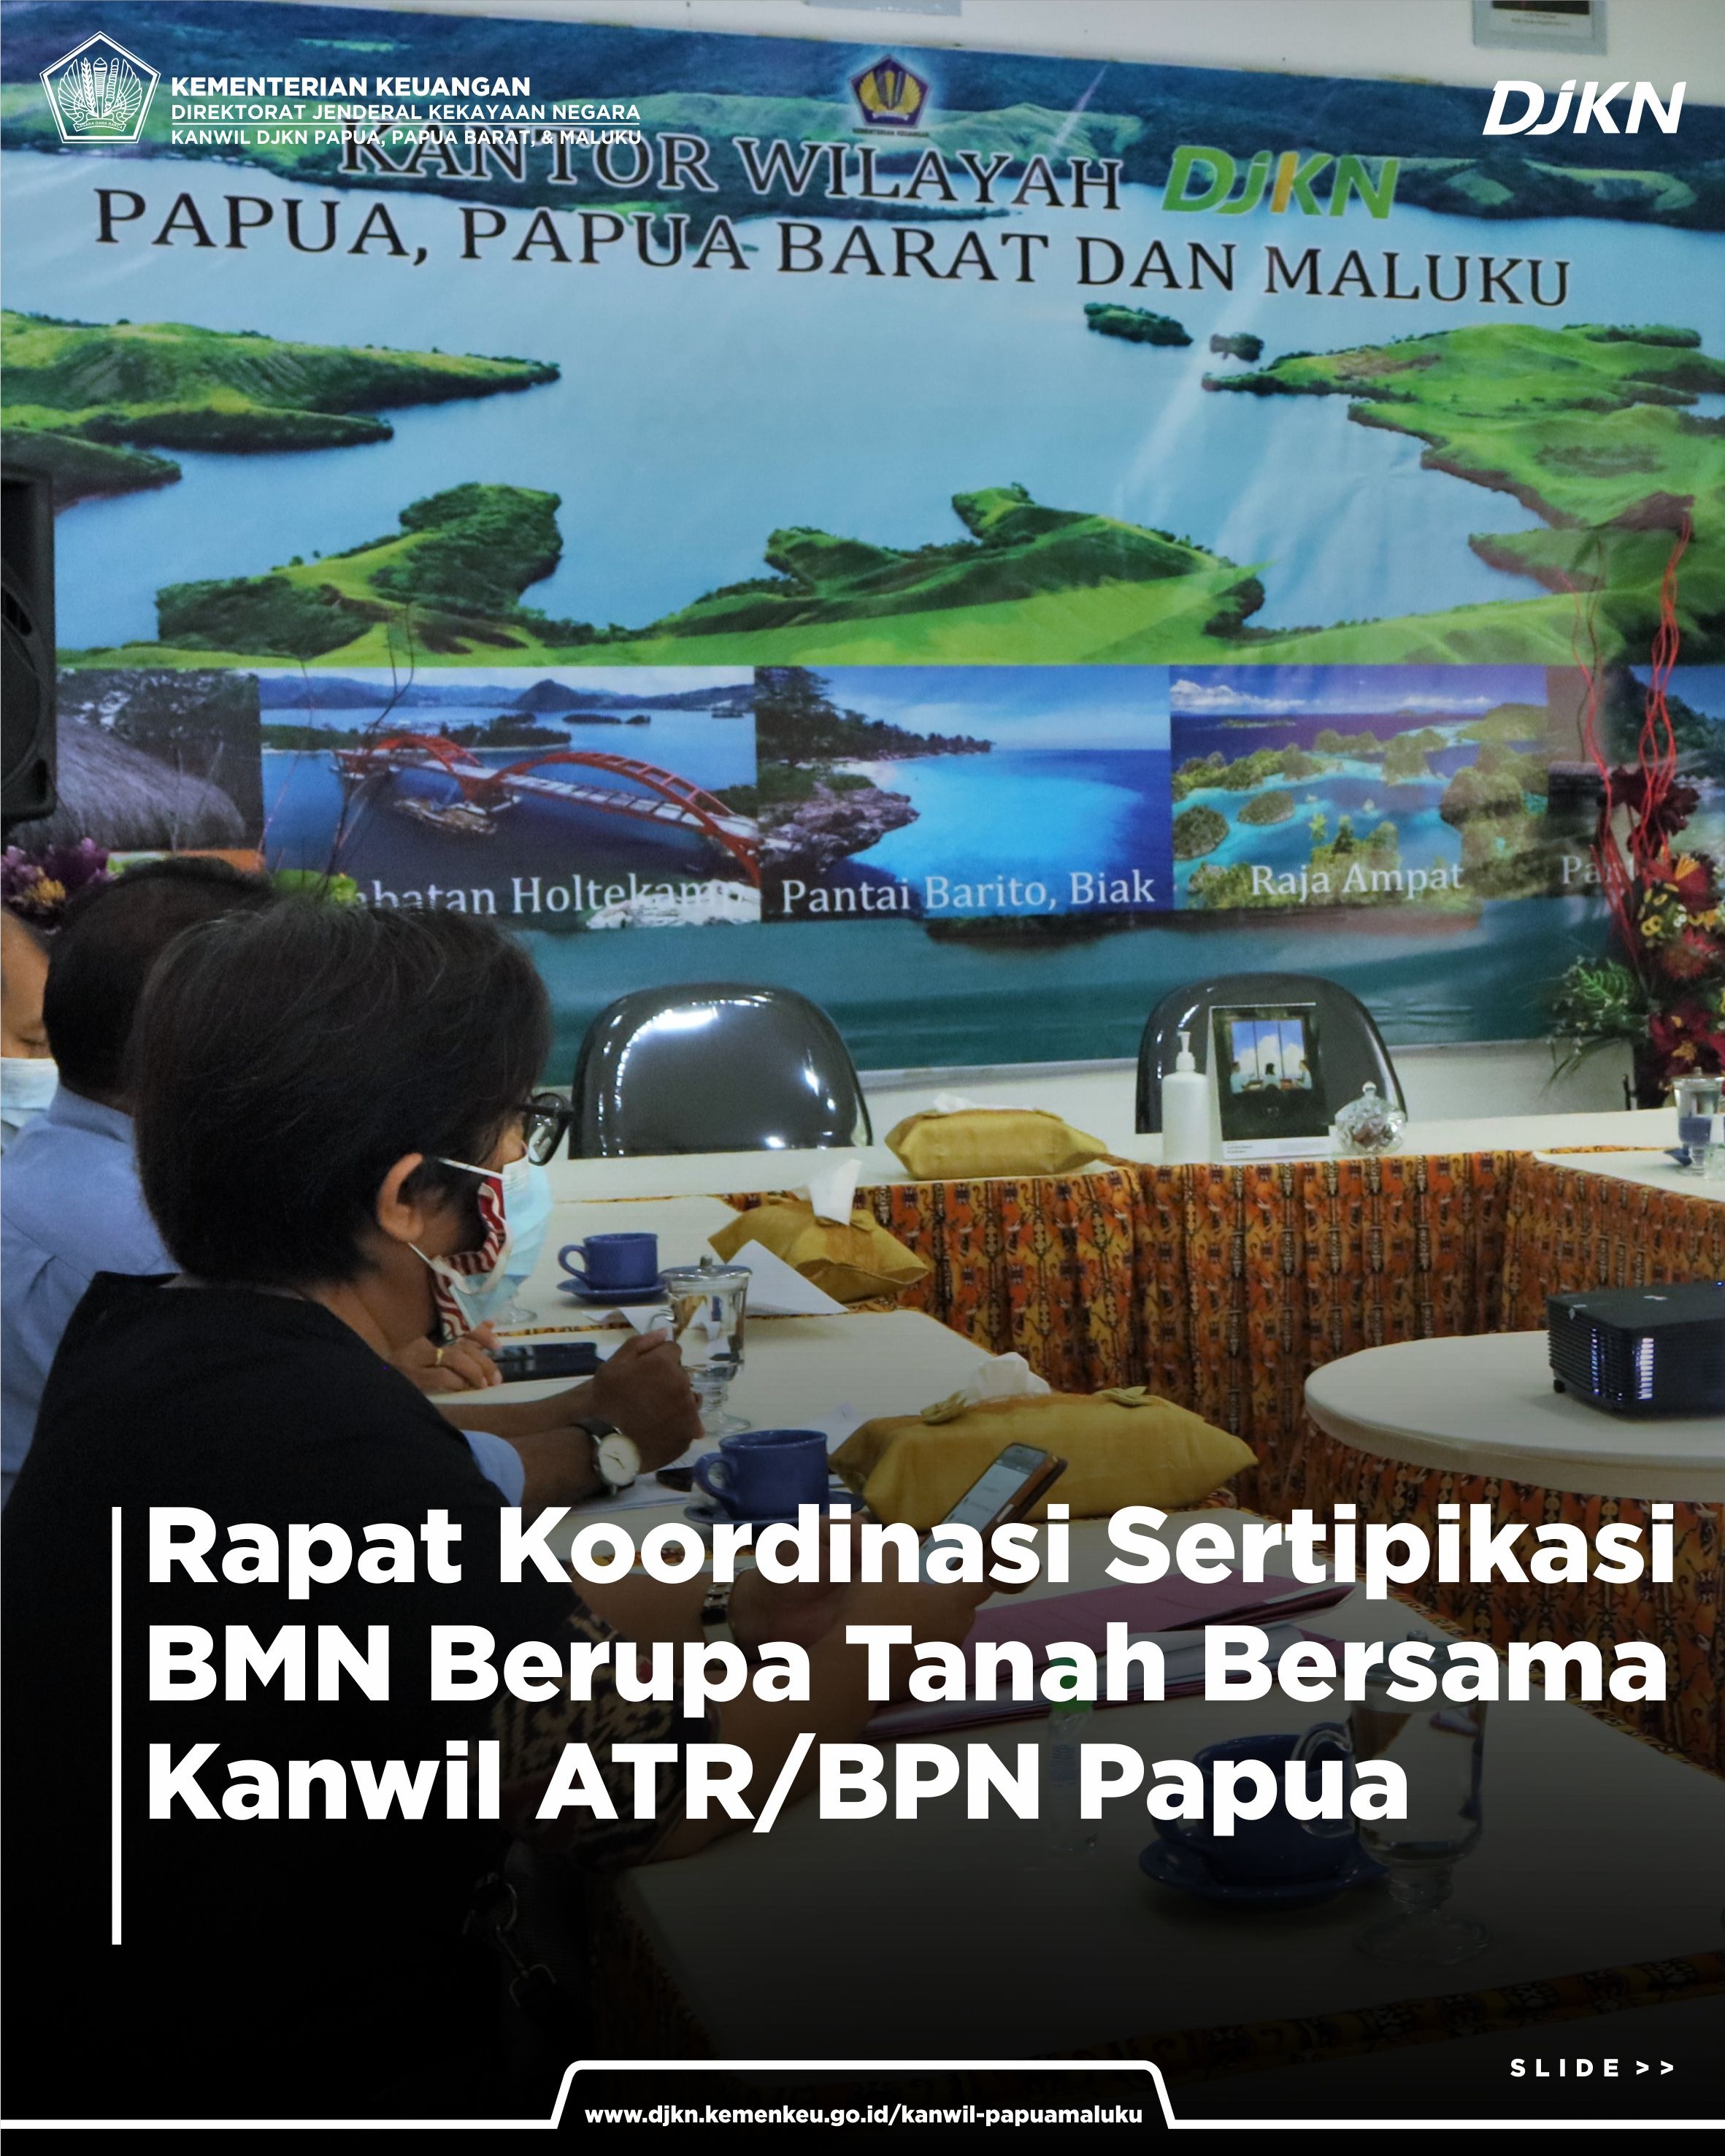 Rapat Koordinasi Sertipikasi BMN Berupa Tanah bersama dengan Kanwil ATR/BPN Papua